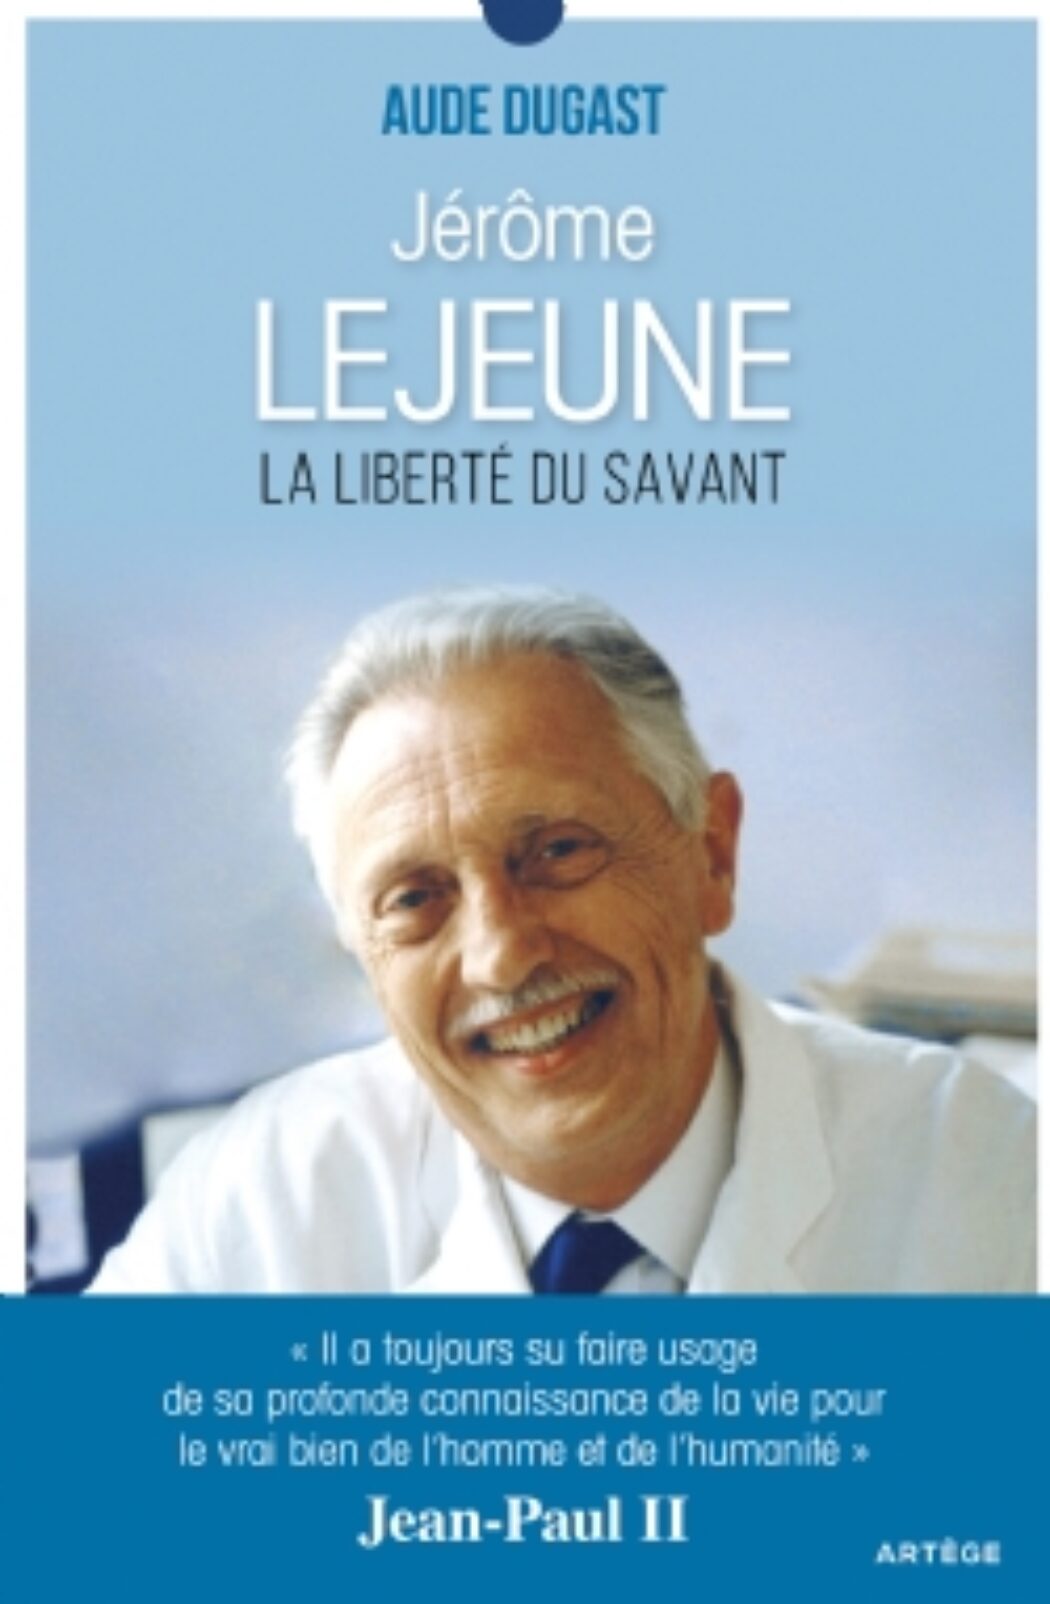 Grand scientifique, Jérôme Lejeune n’a eu aucune difficulté à adhérer aux vérités de la foi